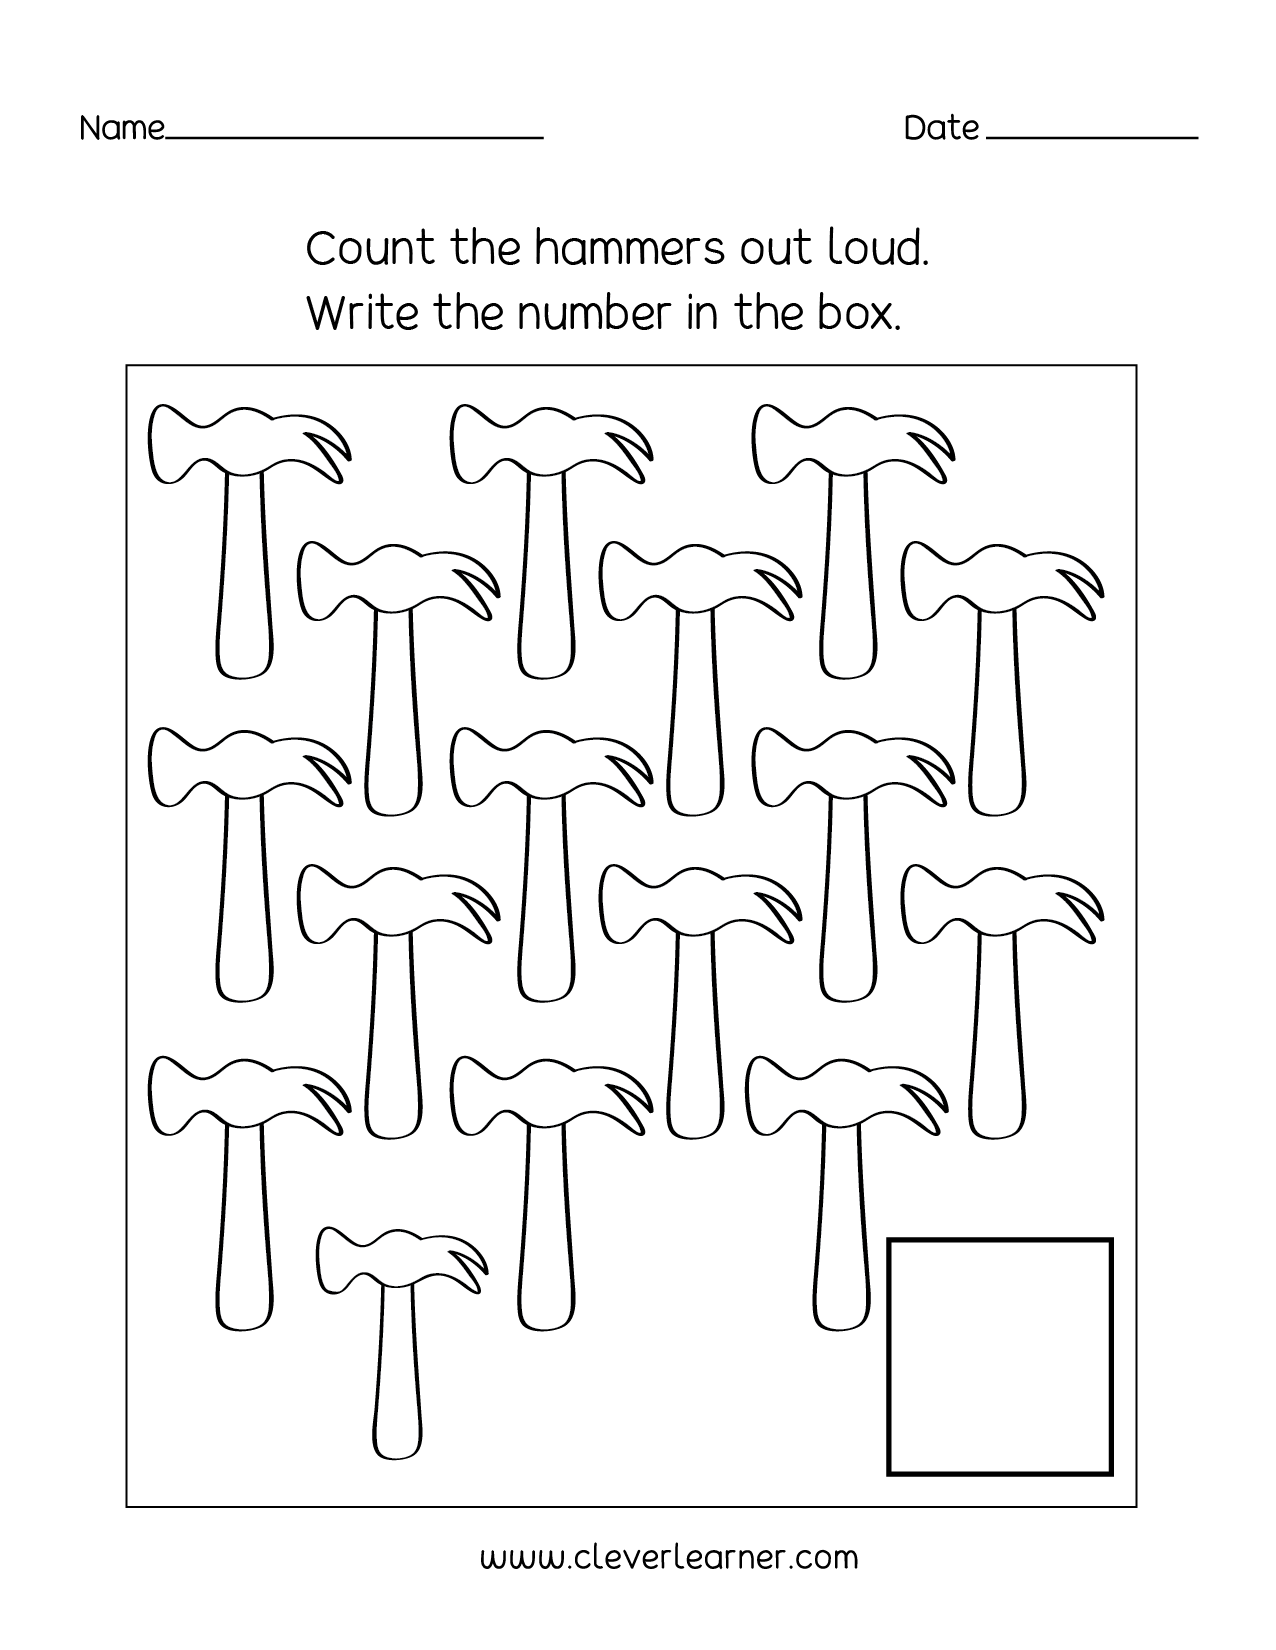 tracing-number-9-kindergarten-worksheet-free-printable-pdf